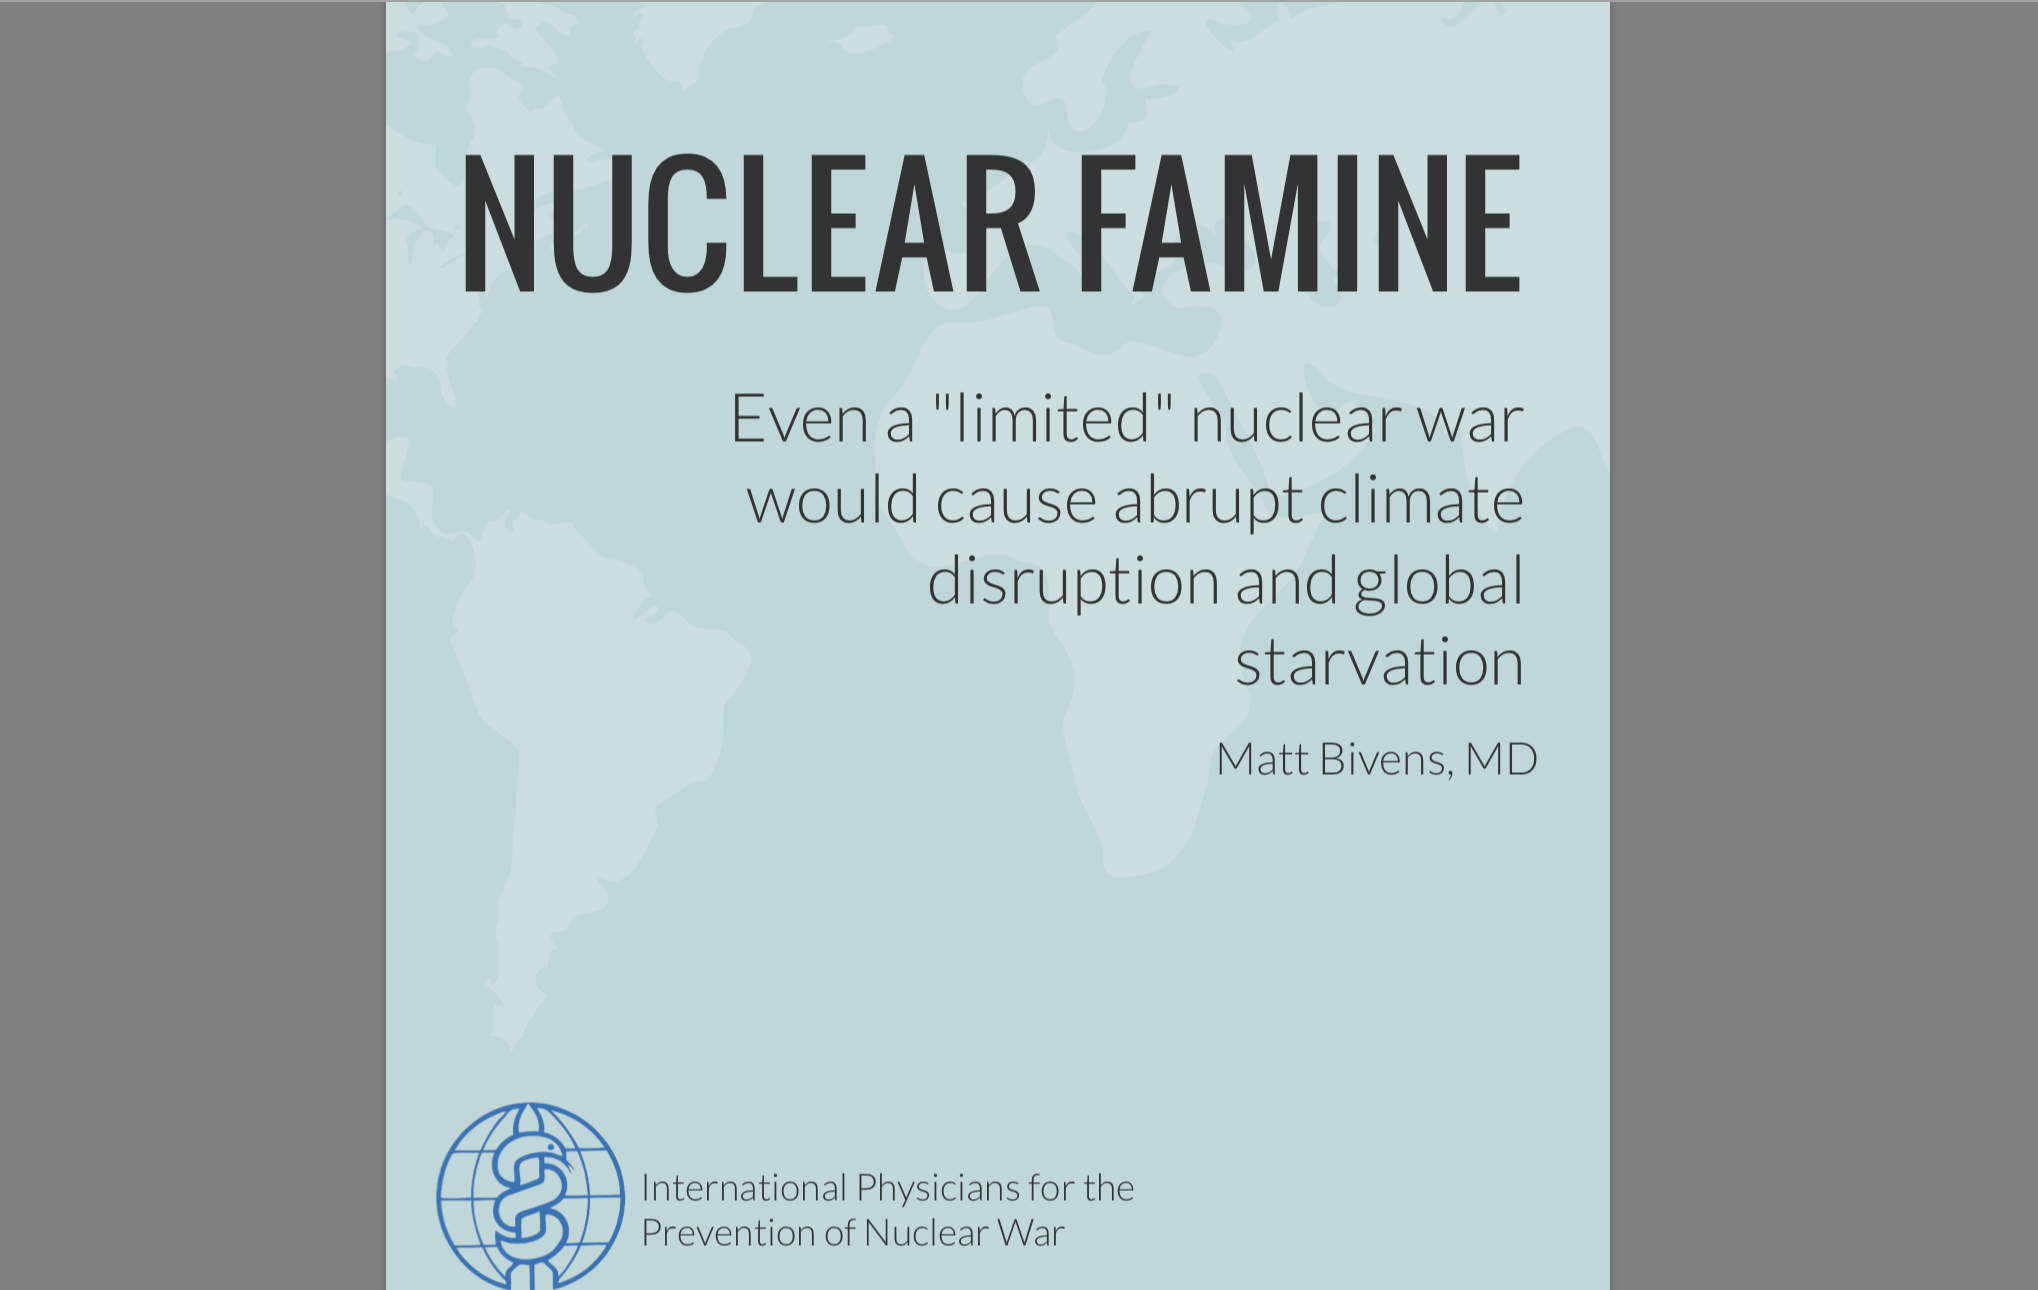 IPPNW, medicii împotriva războiului nuclear, au realizat un nou studiu care spune că până și un război nuclear limitat va duce la o iarnă globală și o foamete mondială